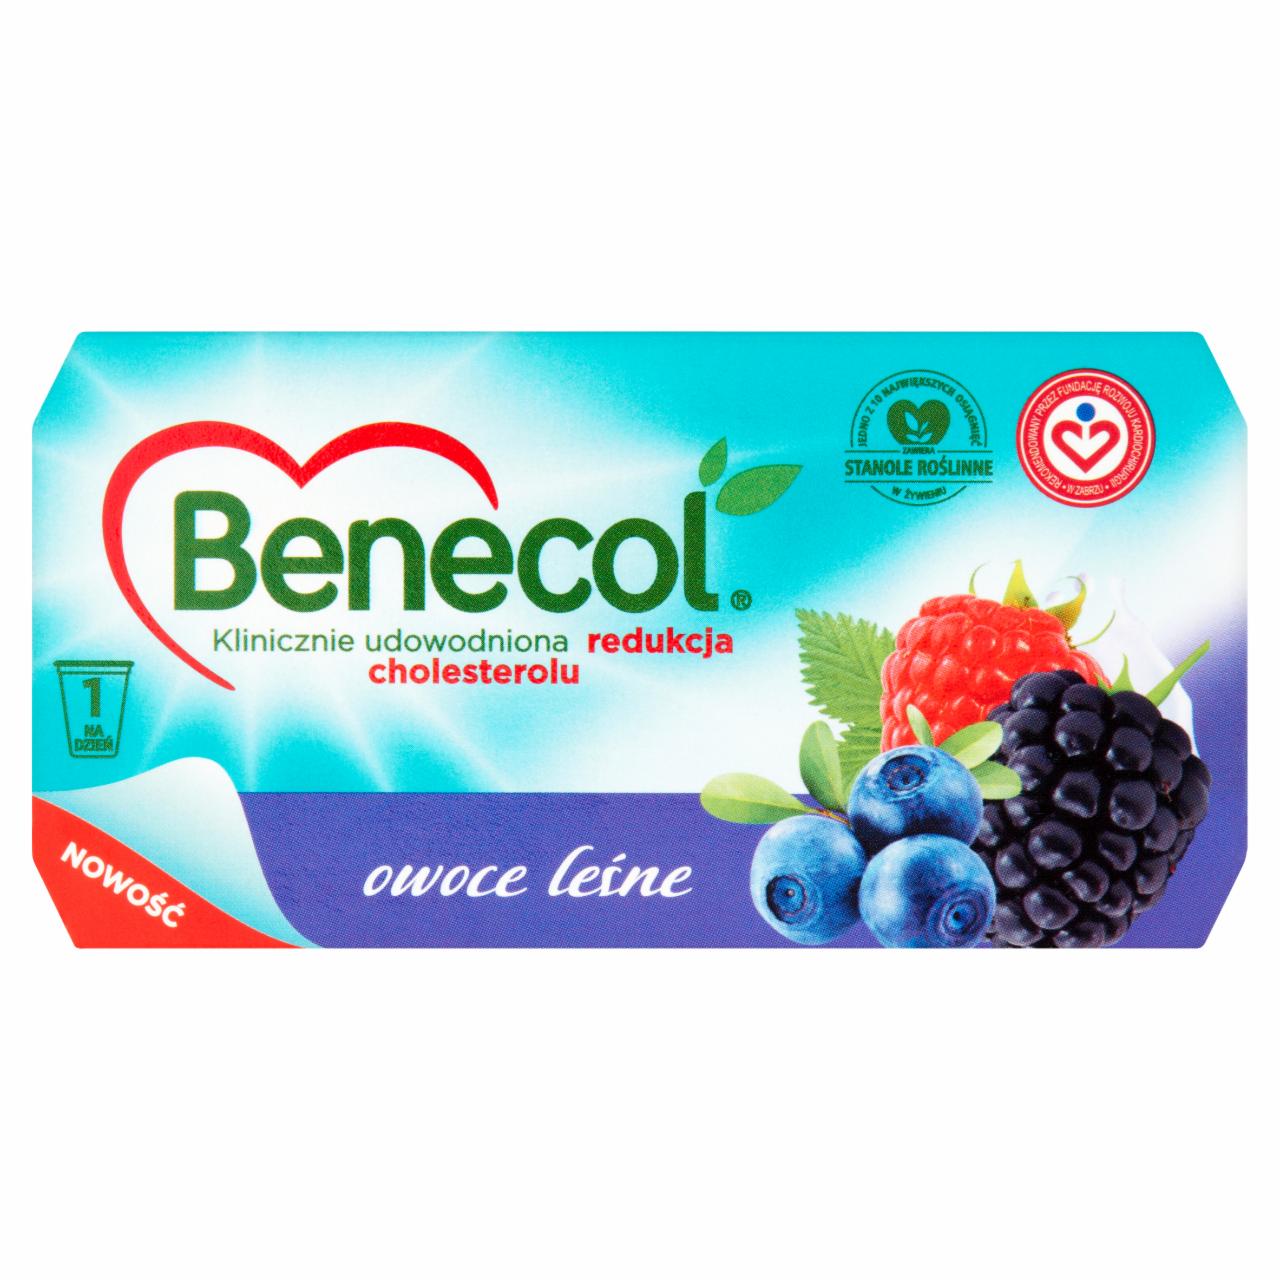 Zdjęcia - Benecol Produkt mleczny z owocami leśnymi z dodatkiem stanoli roślinnych 250 g (2 sztuki)